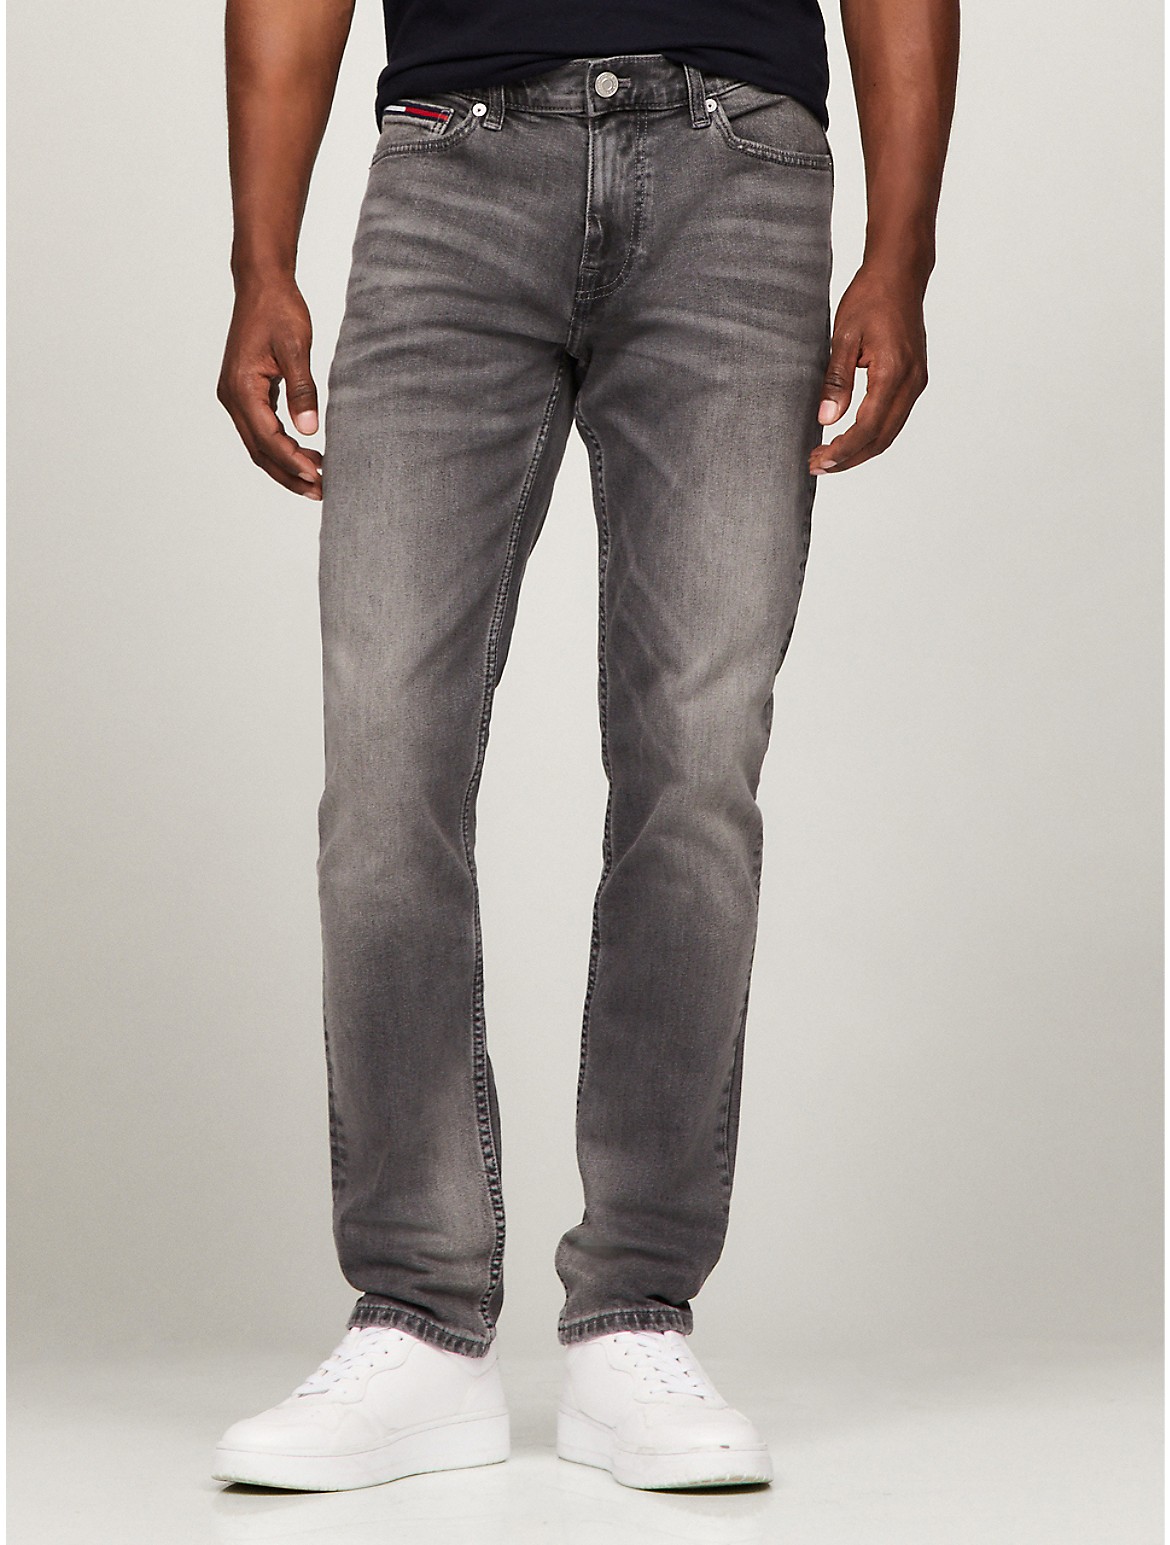 Tommy Hilfiger Men's Slim Fit Grey Wash Jean